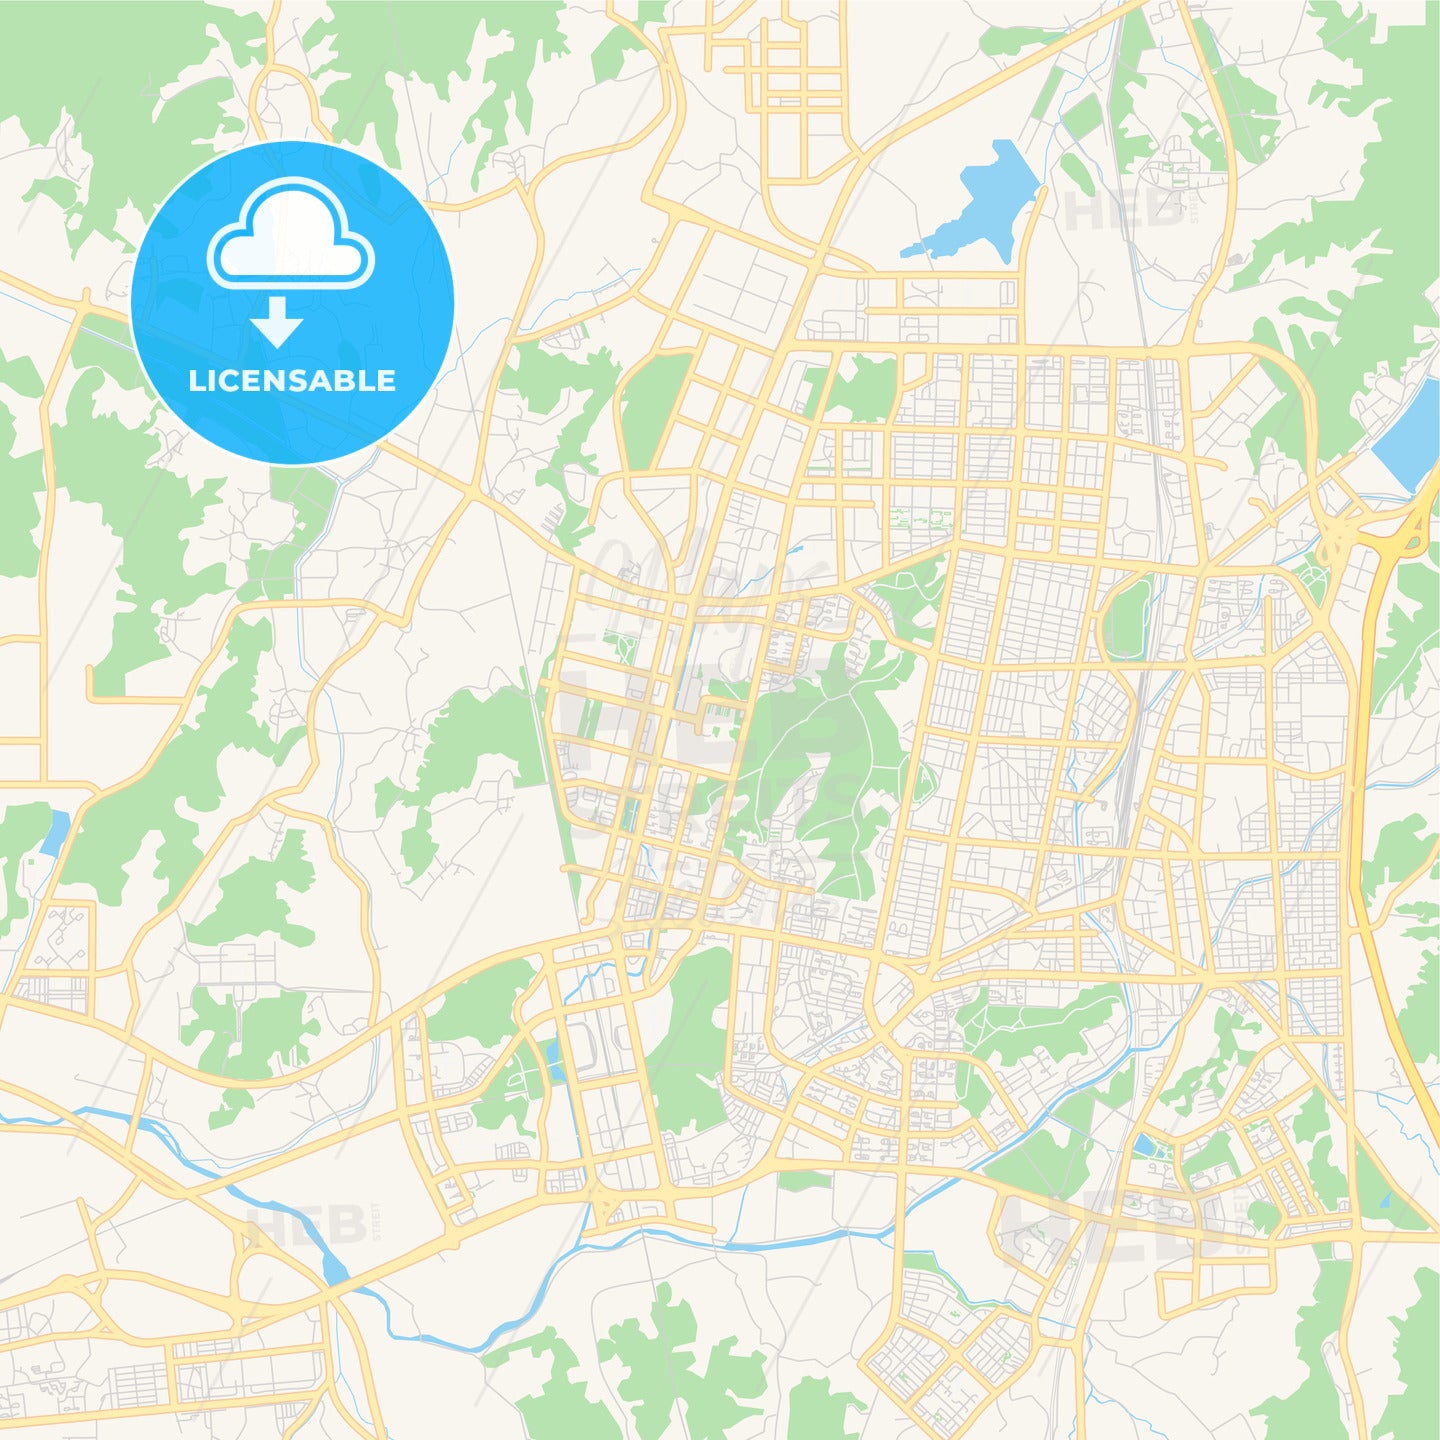 Printable street map of Cheonan, South Korea